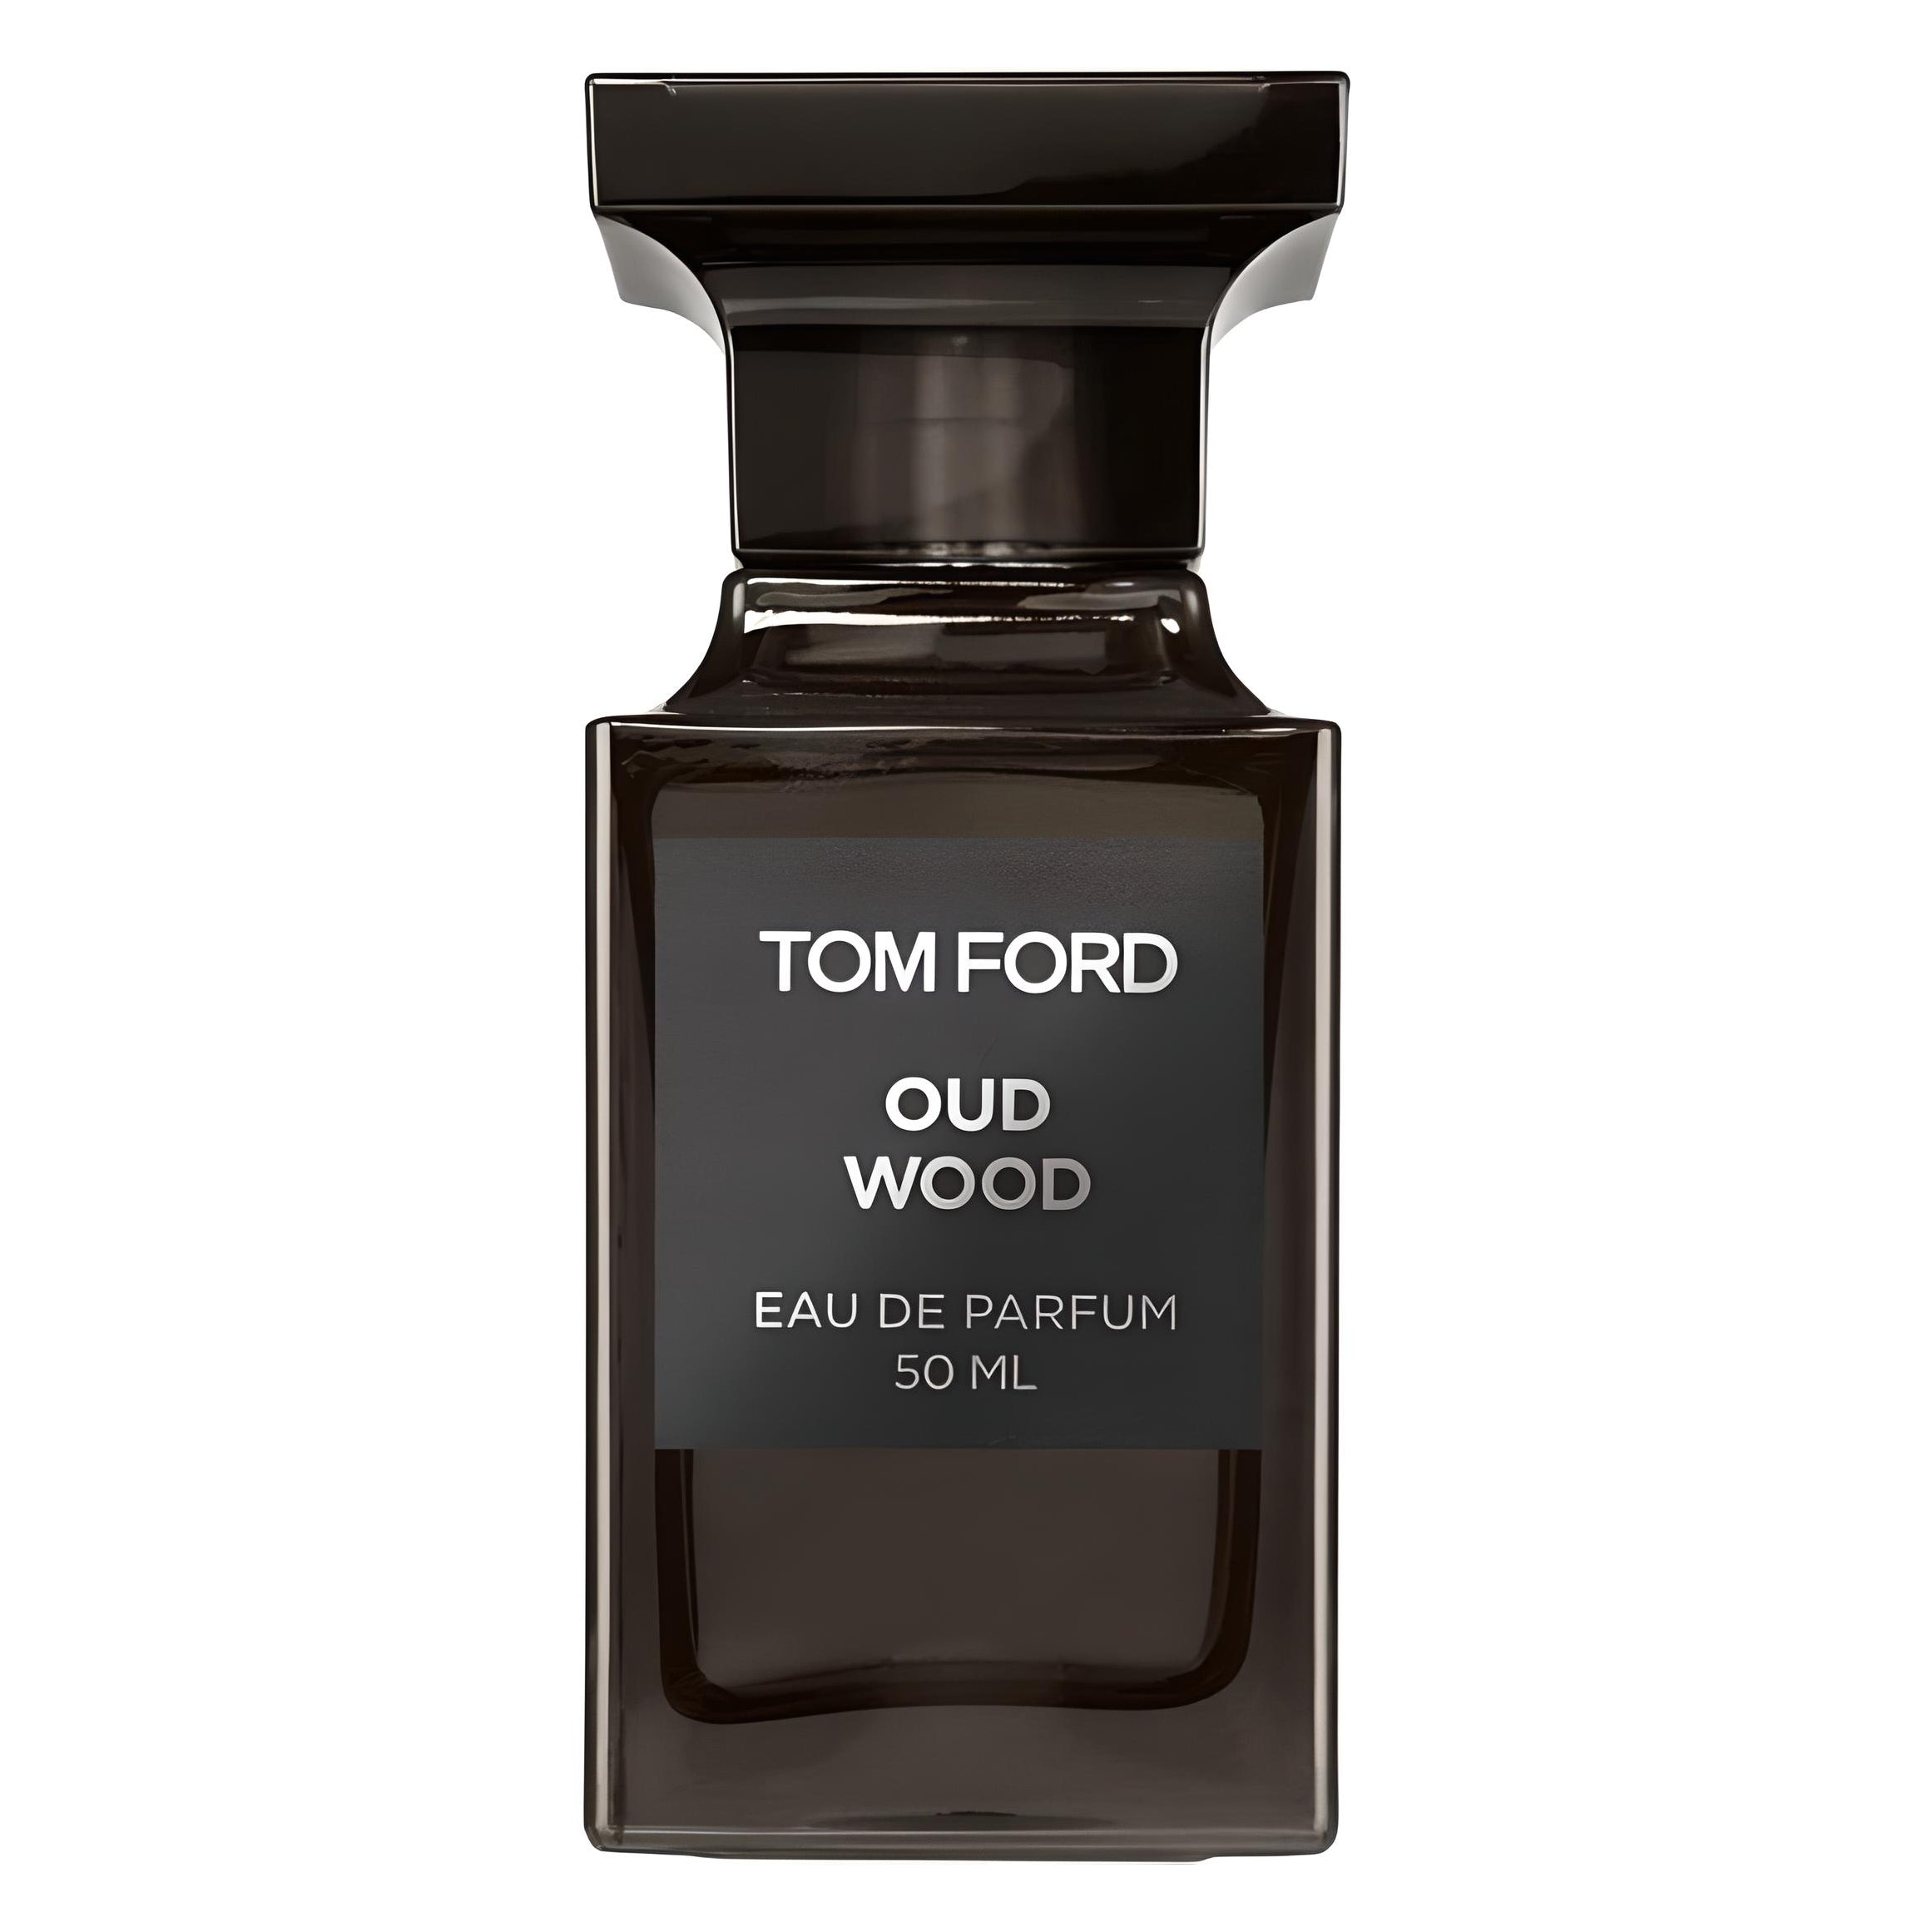 Oud Wood Eau de Parfum Eau de Parfum TOM FORD   